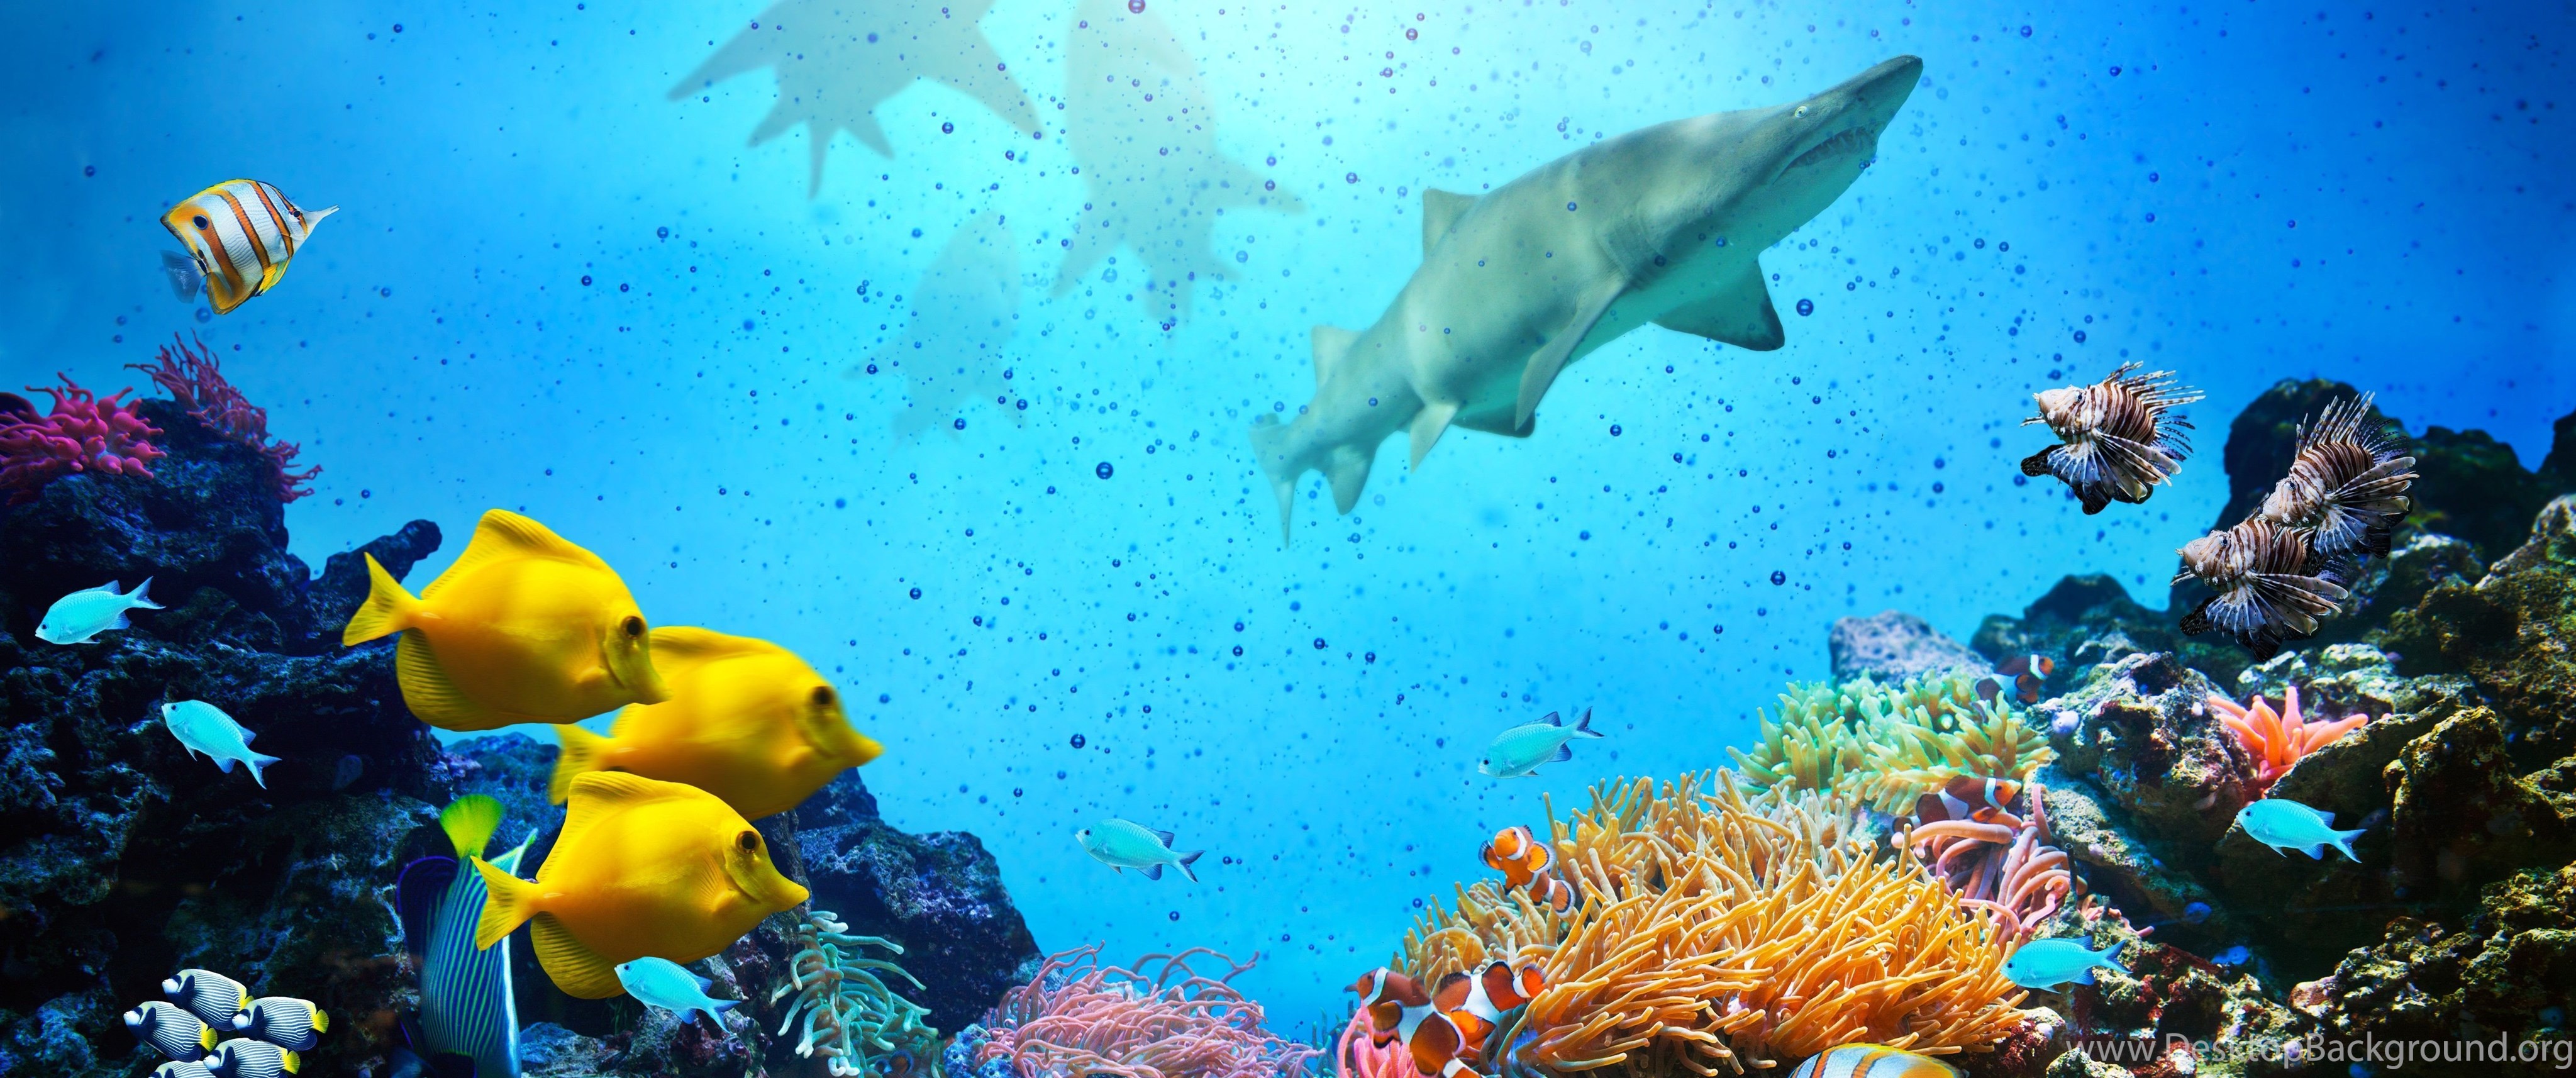 Coral life. Подводный мир рыбки. Фон океана под водой. Рыбы панорама.